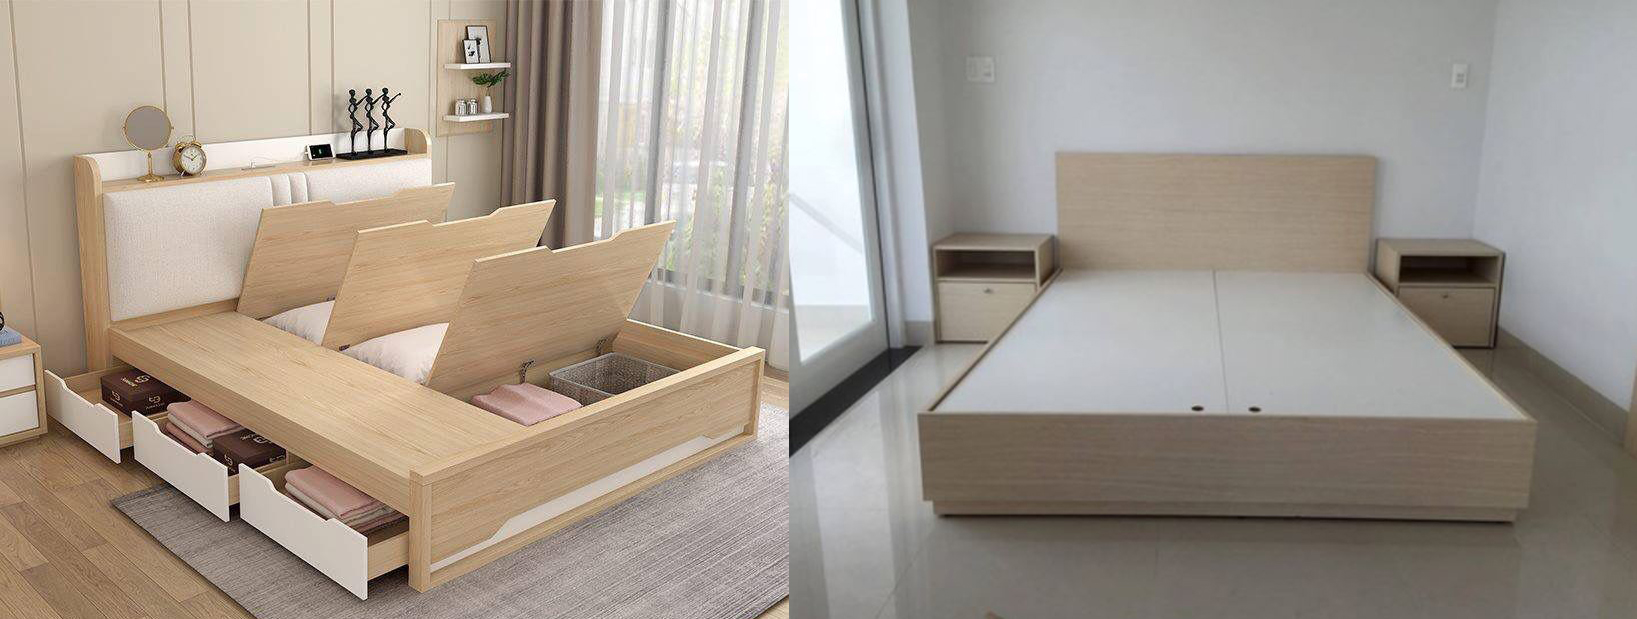 so sánh bộ giường ngủ giá rẻ gỗ công nghiệp